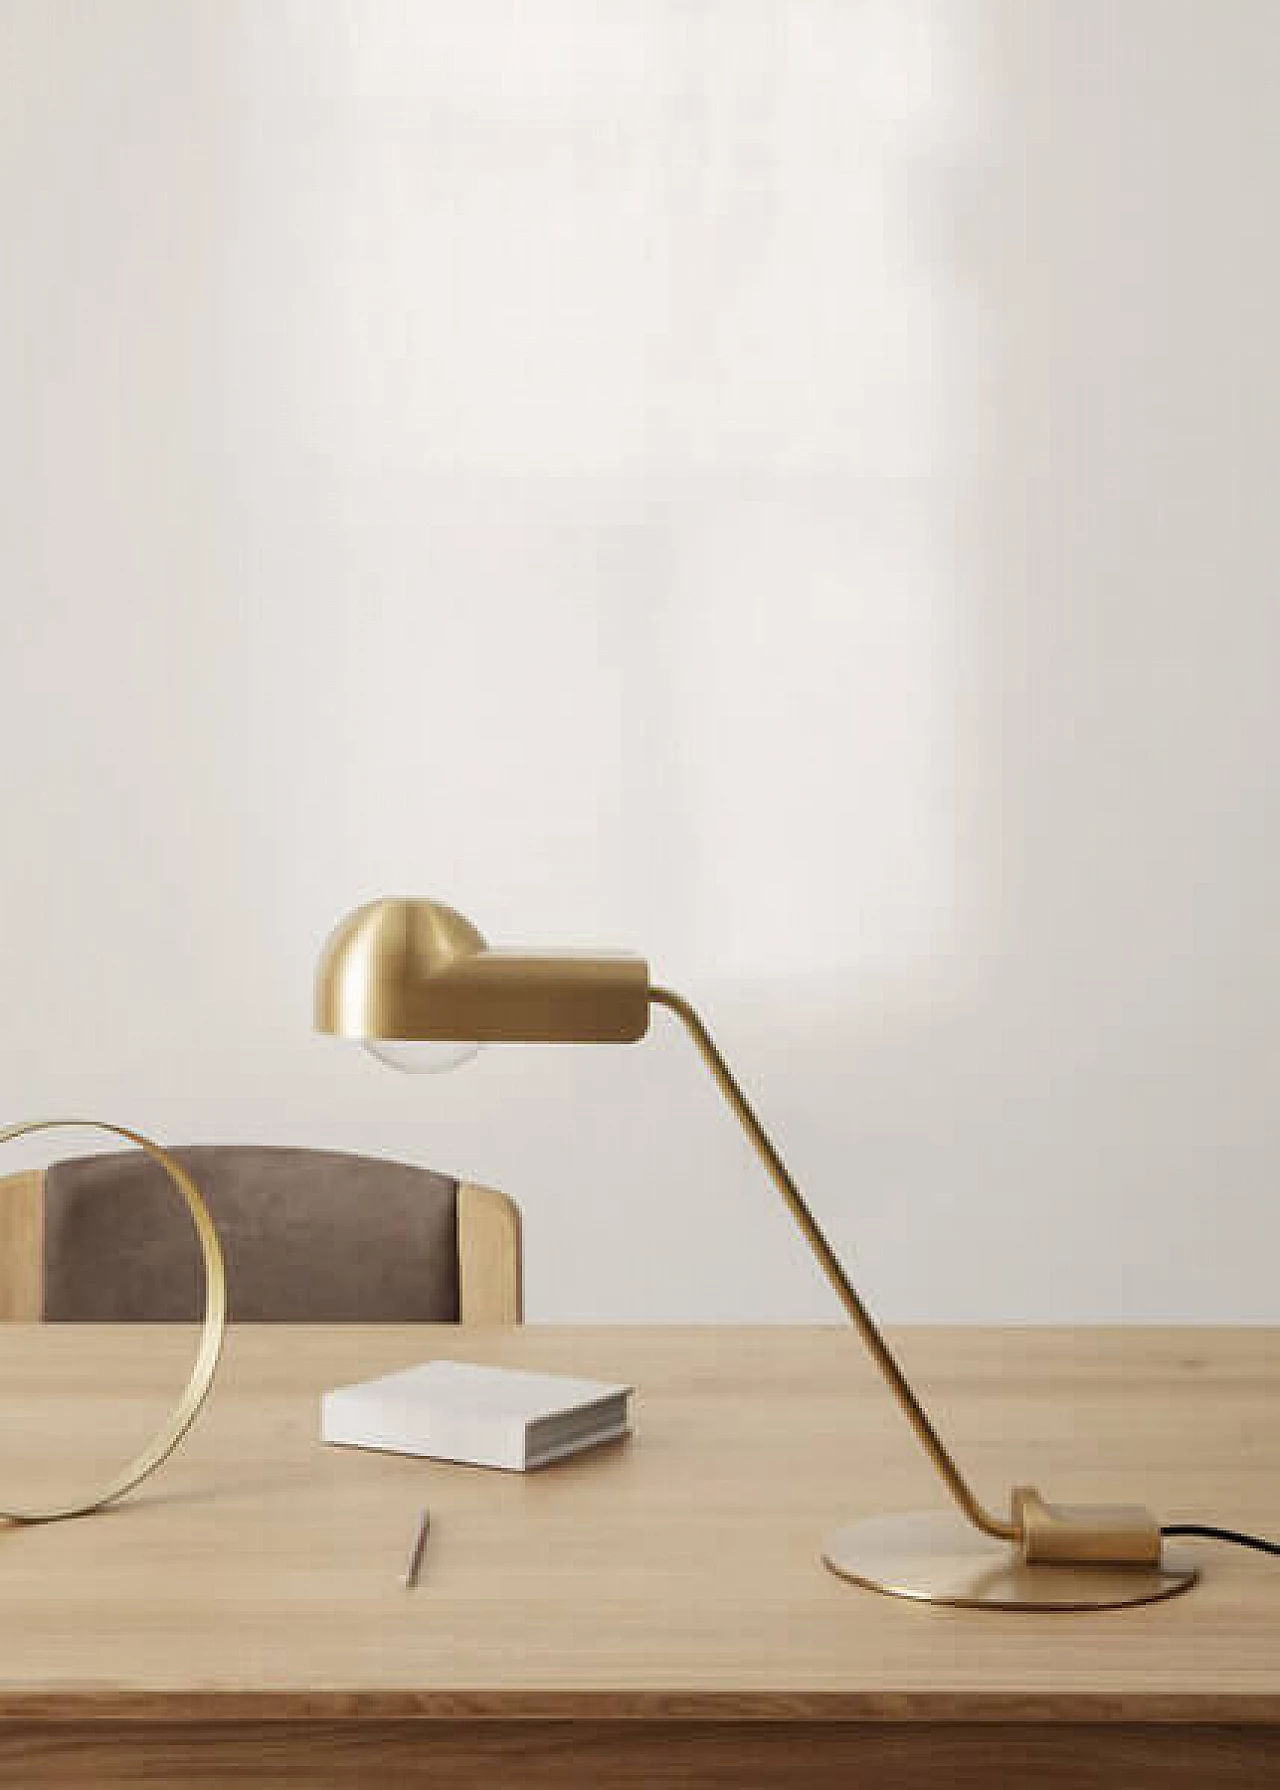 Domo table lamp by Joe Colombo for Karakter Copenhagen 1